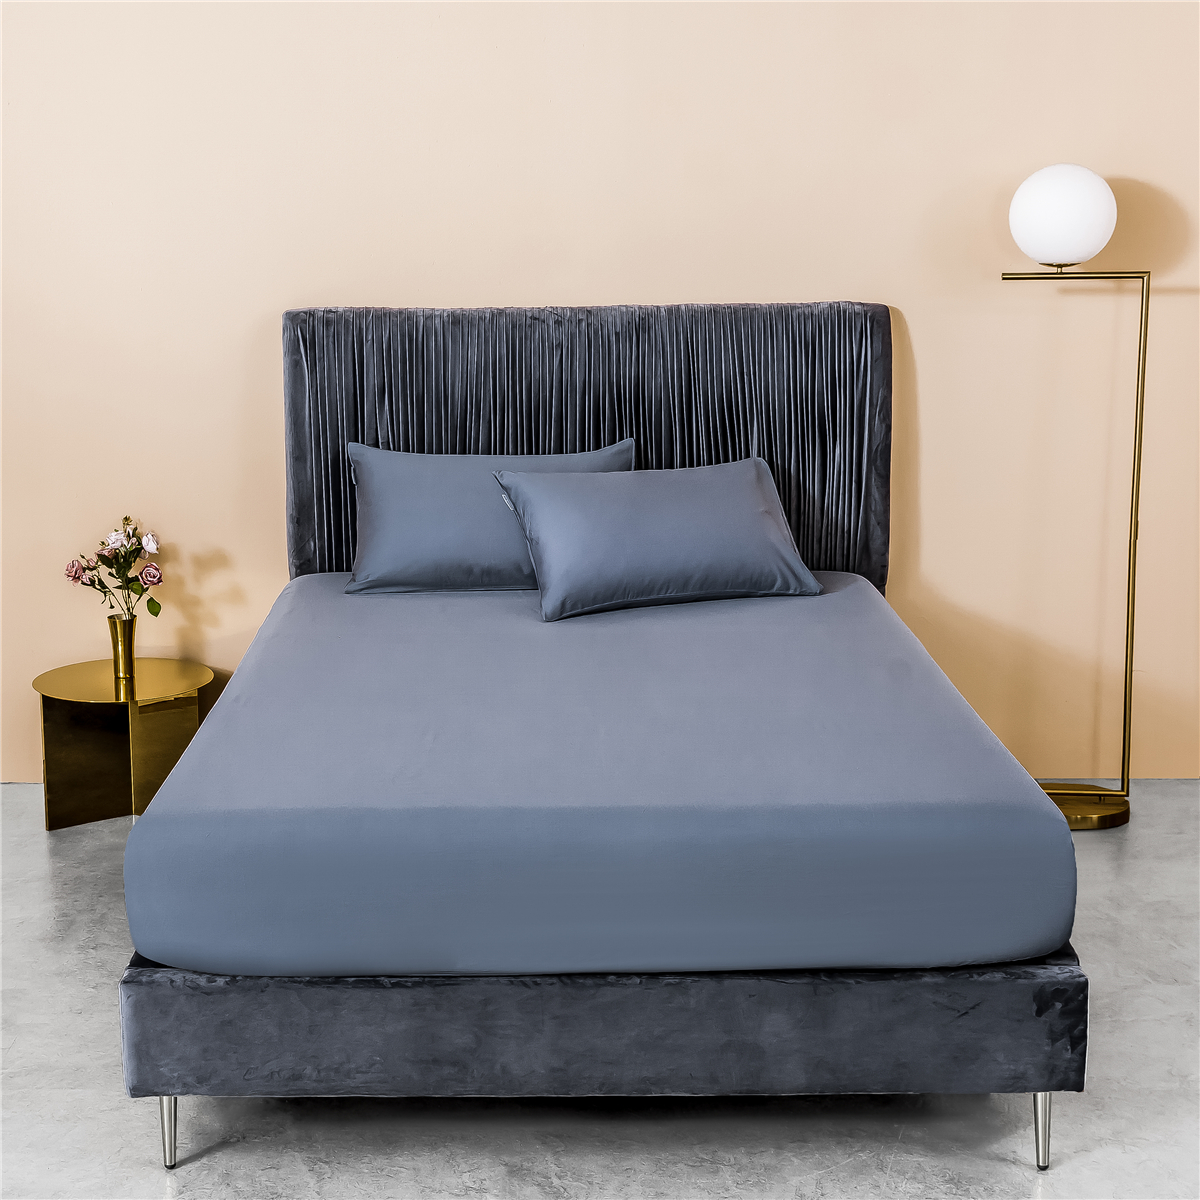 新款60s纯色单品床笠 180cmx200cm 纯色-紫灰